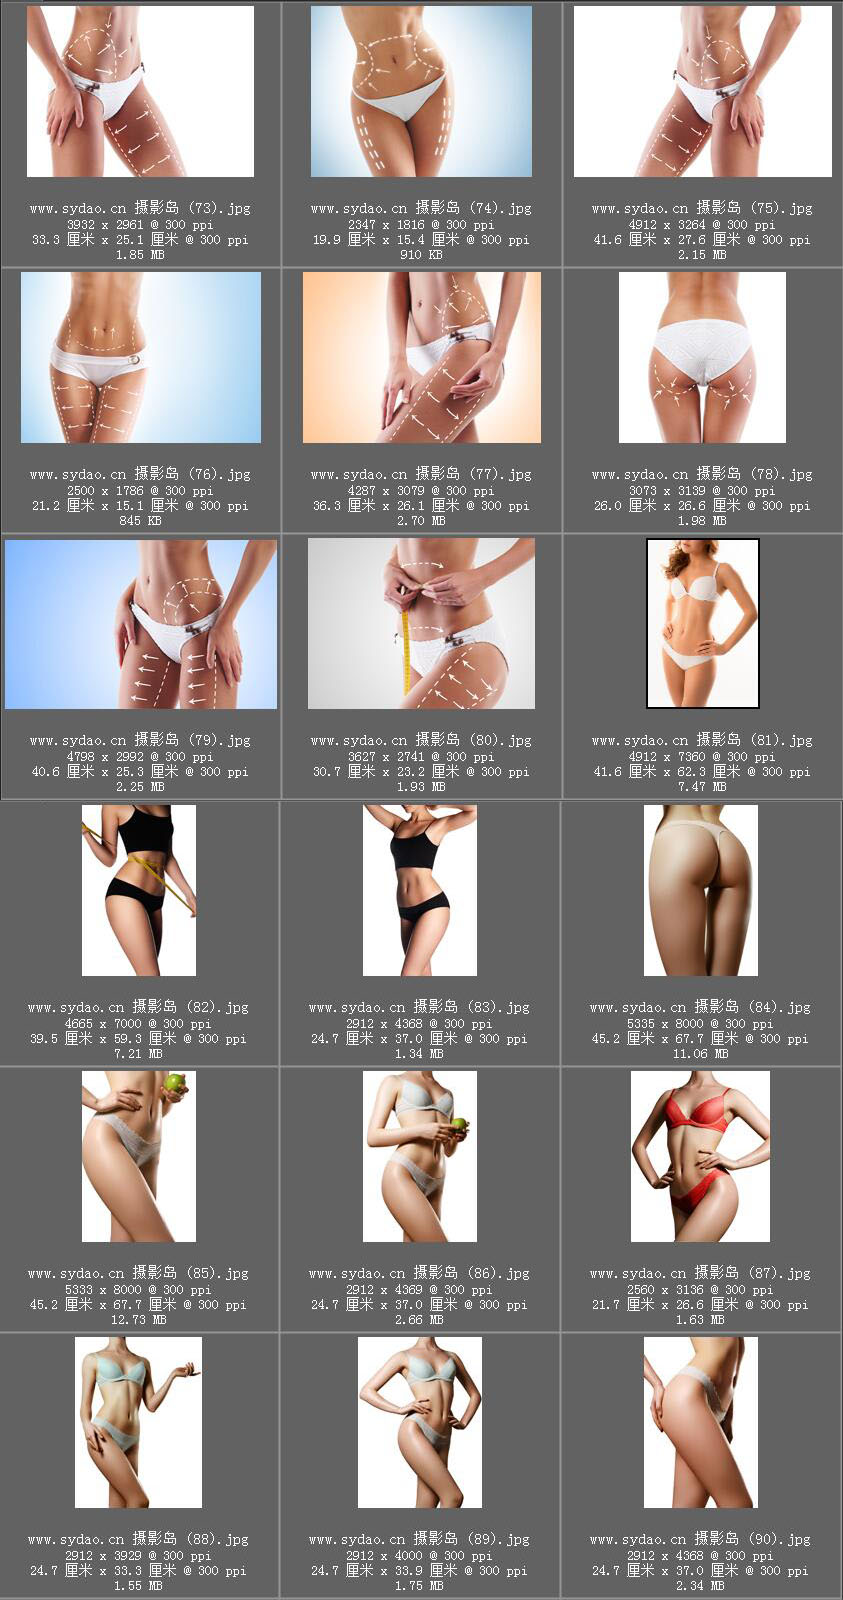 女性瘦身塑形照片对比素材，美女模特腰围腹部减脂样片，减肥平面广告摄影图片全集